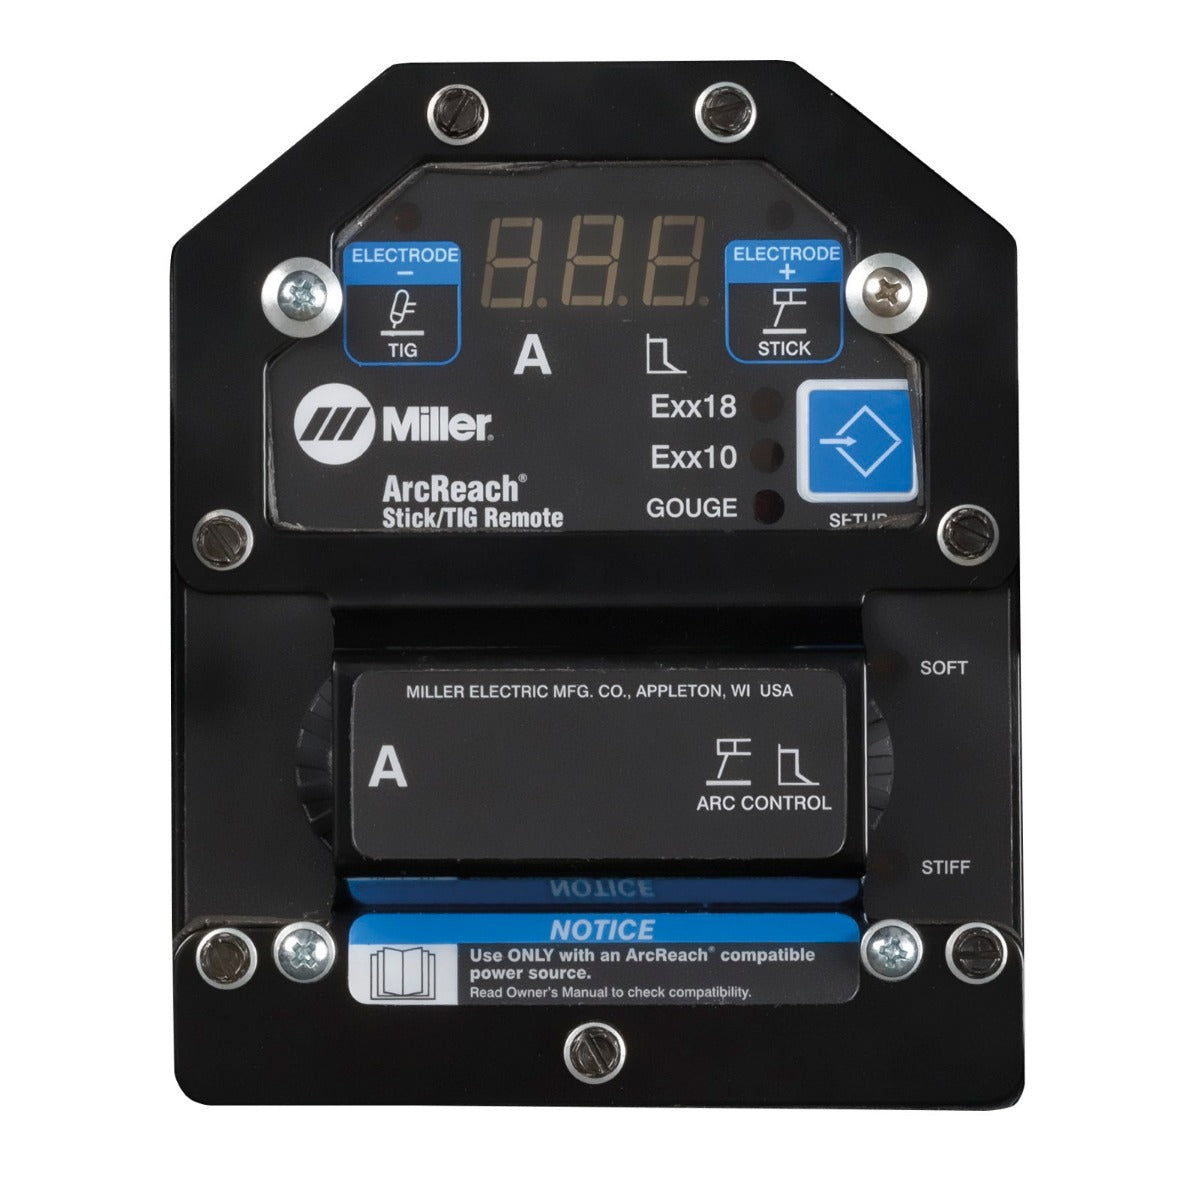 Miller XMT 350 FieldPro ArcReach Stick/Tig Remote Pkg (951736)